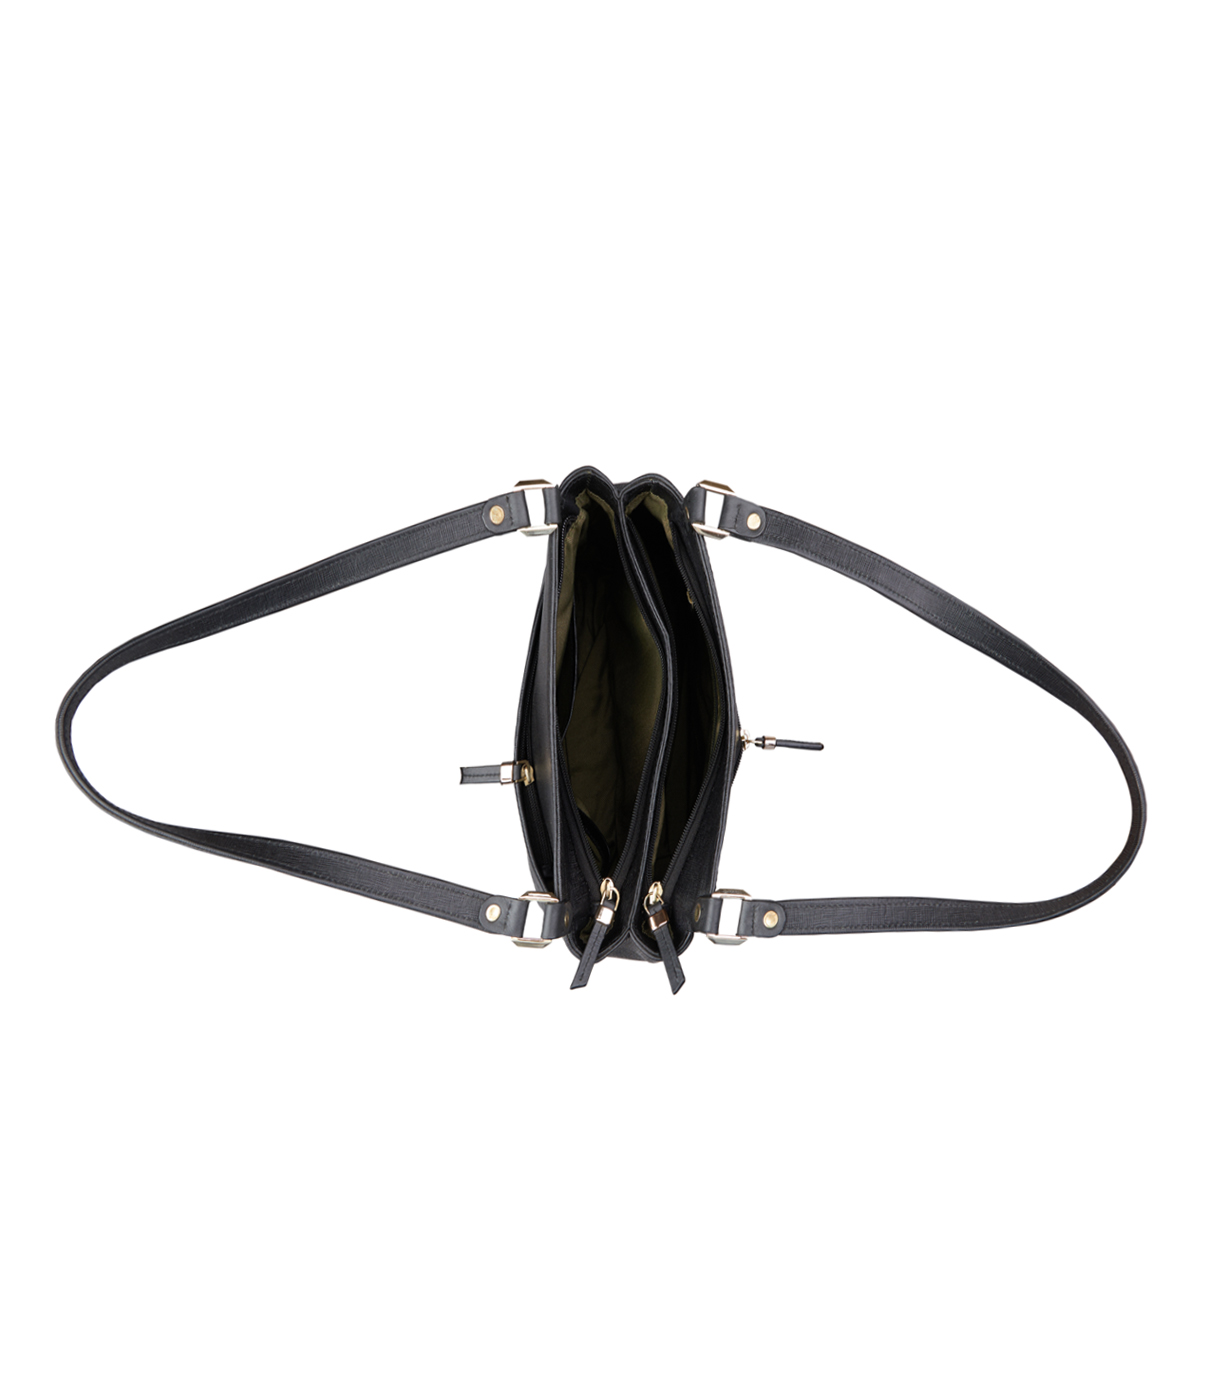 B899-Abril-Shoulder work bag in Genuine Leather - Black